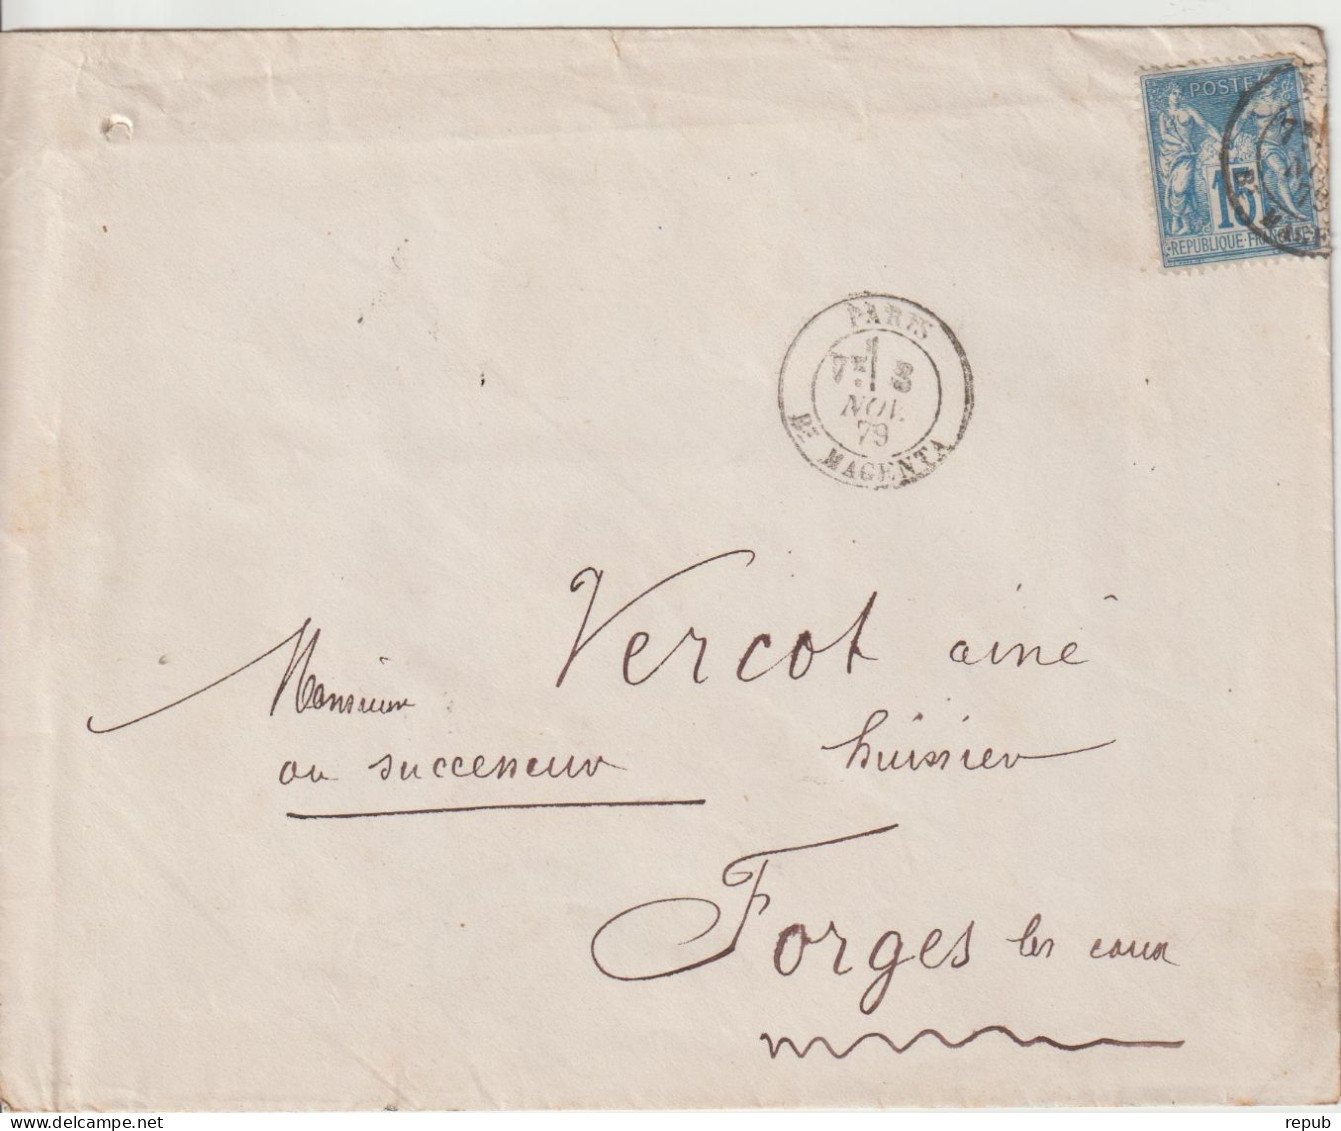 France Lettre 1879 De Paris Bd Magenta Pour Forges (76) - 1877-1920: Semi Modern Period